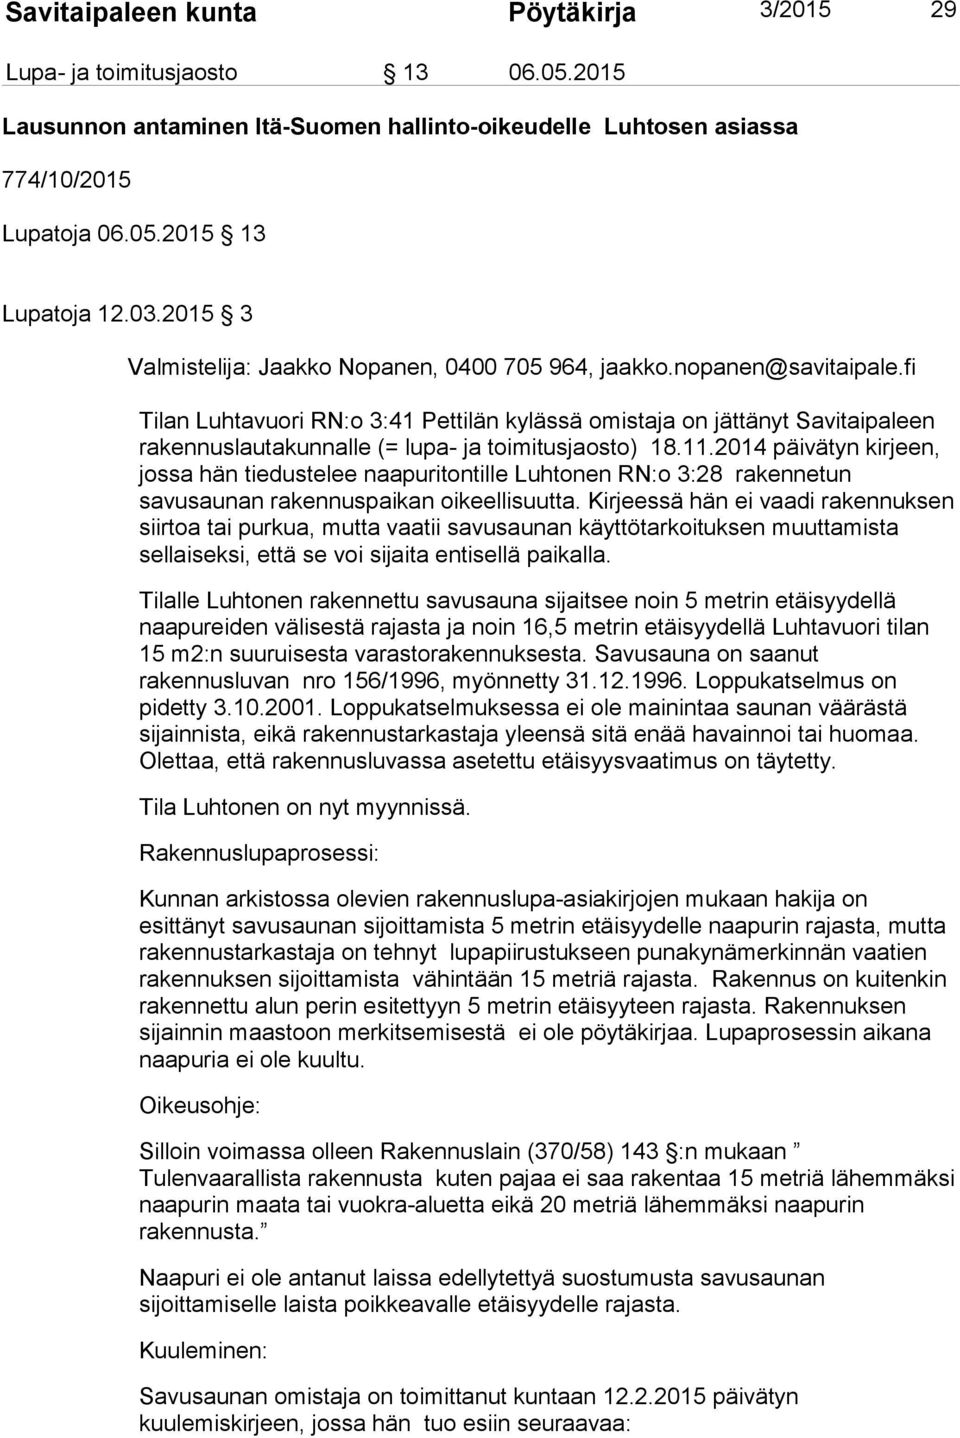 fi Tilan Luhtavuori RN:o 3:41 Pettilän kylässä omistaja on jättänyt Savitaipaleen rakennuslautakunnalle (= lupa- ja toimitusjaosto) 18.11.